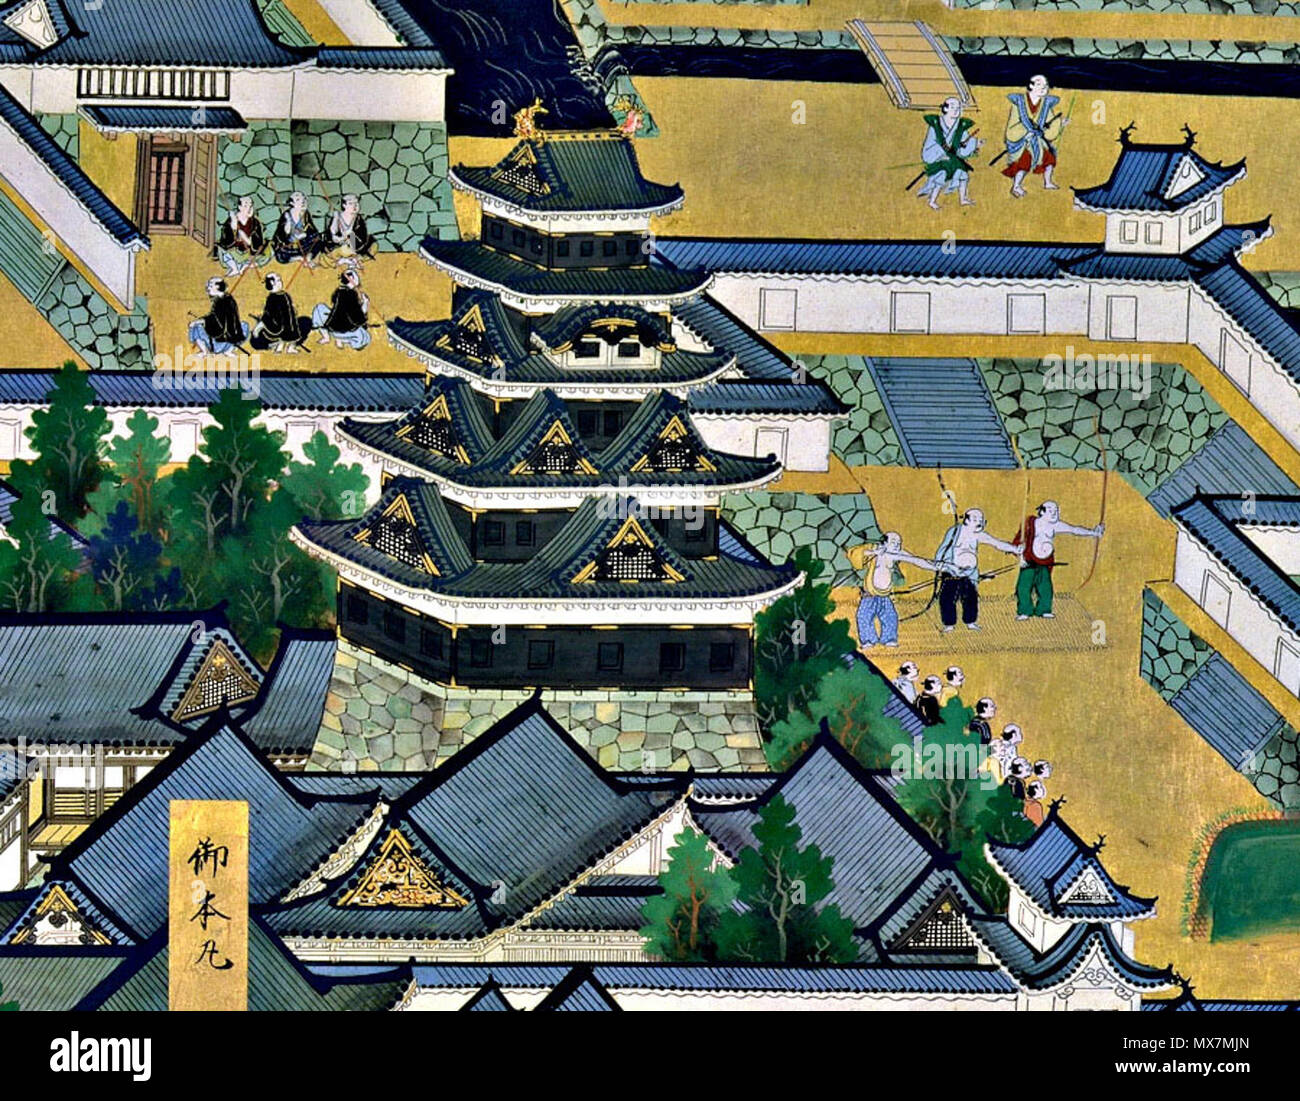 . Inglese: superiore medio del primo pannello a sinistra dello schermo. Enciente centrale del castello di Edo, torre di castello, Bairinzaka, Hirakawaguchi Gate. Il castello di Edo torre (superiore medio del primo pannello a sinistra dello schermo). Il castello di Edo telai a torre grande nella schermata di sinistra come se per accentuare Iemitsu's grand imprese. Questa torre fu il terzo ad essere costruita per il castello di Edo. Essa è stata completata nel 1638 (Kan'ei 15). La sua altezza dalla base è di oltre 60 metri. Durante il grande incendio Meireki del 1657 (Meireki 3), tuttavia, la torre fu distrutta e mai più ricostruita nuovamente. 'Vista di Edo' (Edo zu) coppia di sei-pannello schermi di piegatura Foto Stock